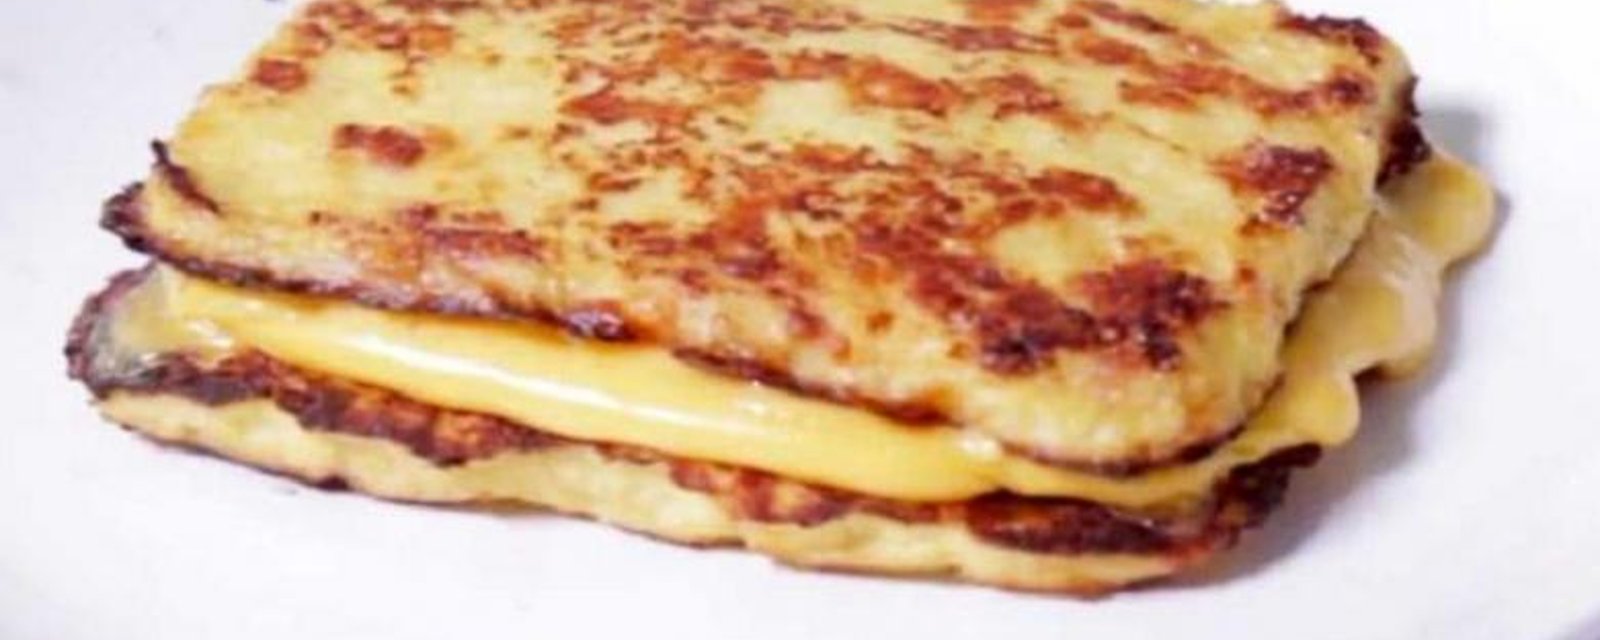 Une recette de grilled cheese pas ordinaire! Plus 3 recettes qui vous épateront!